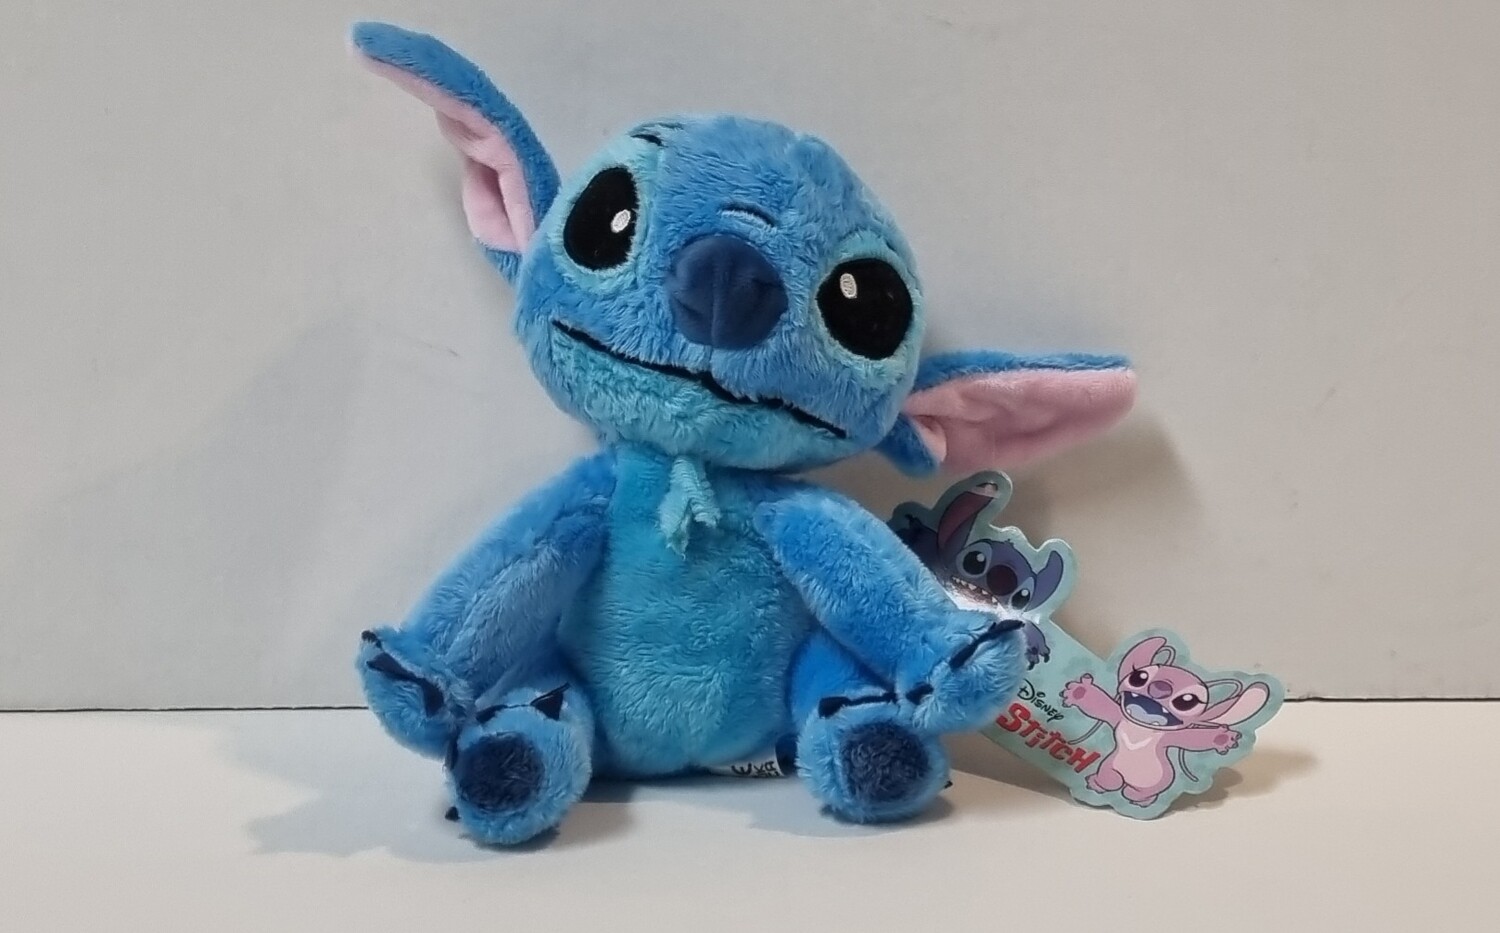 Knuffel, Stitch, Lilo & Stitch, Disney, 20 cm